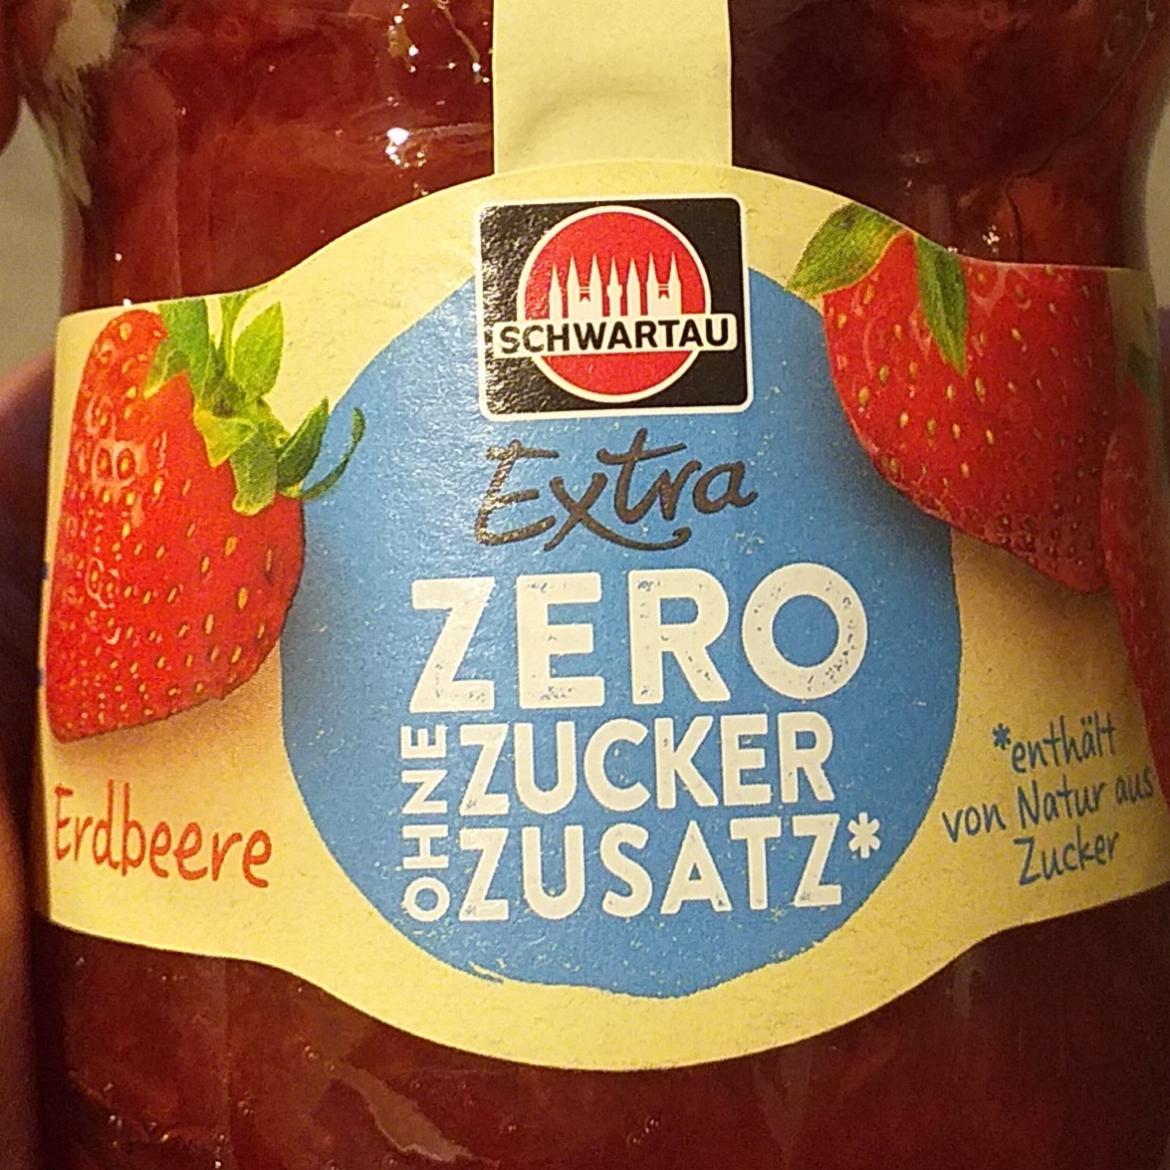 Fotografie - Extra zero ohne zucker zusatz erdbeere Schwartau